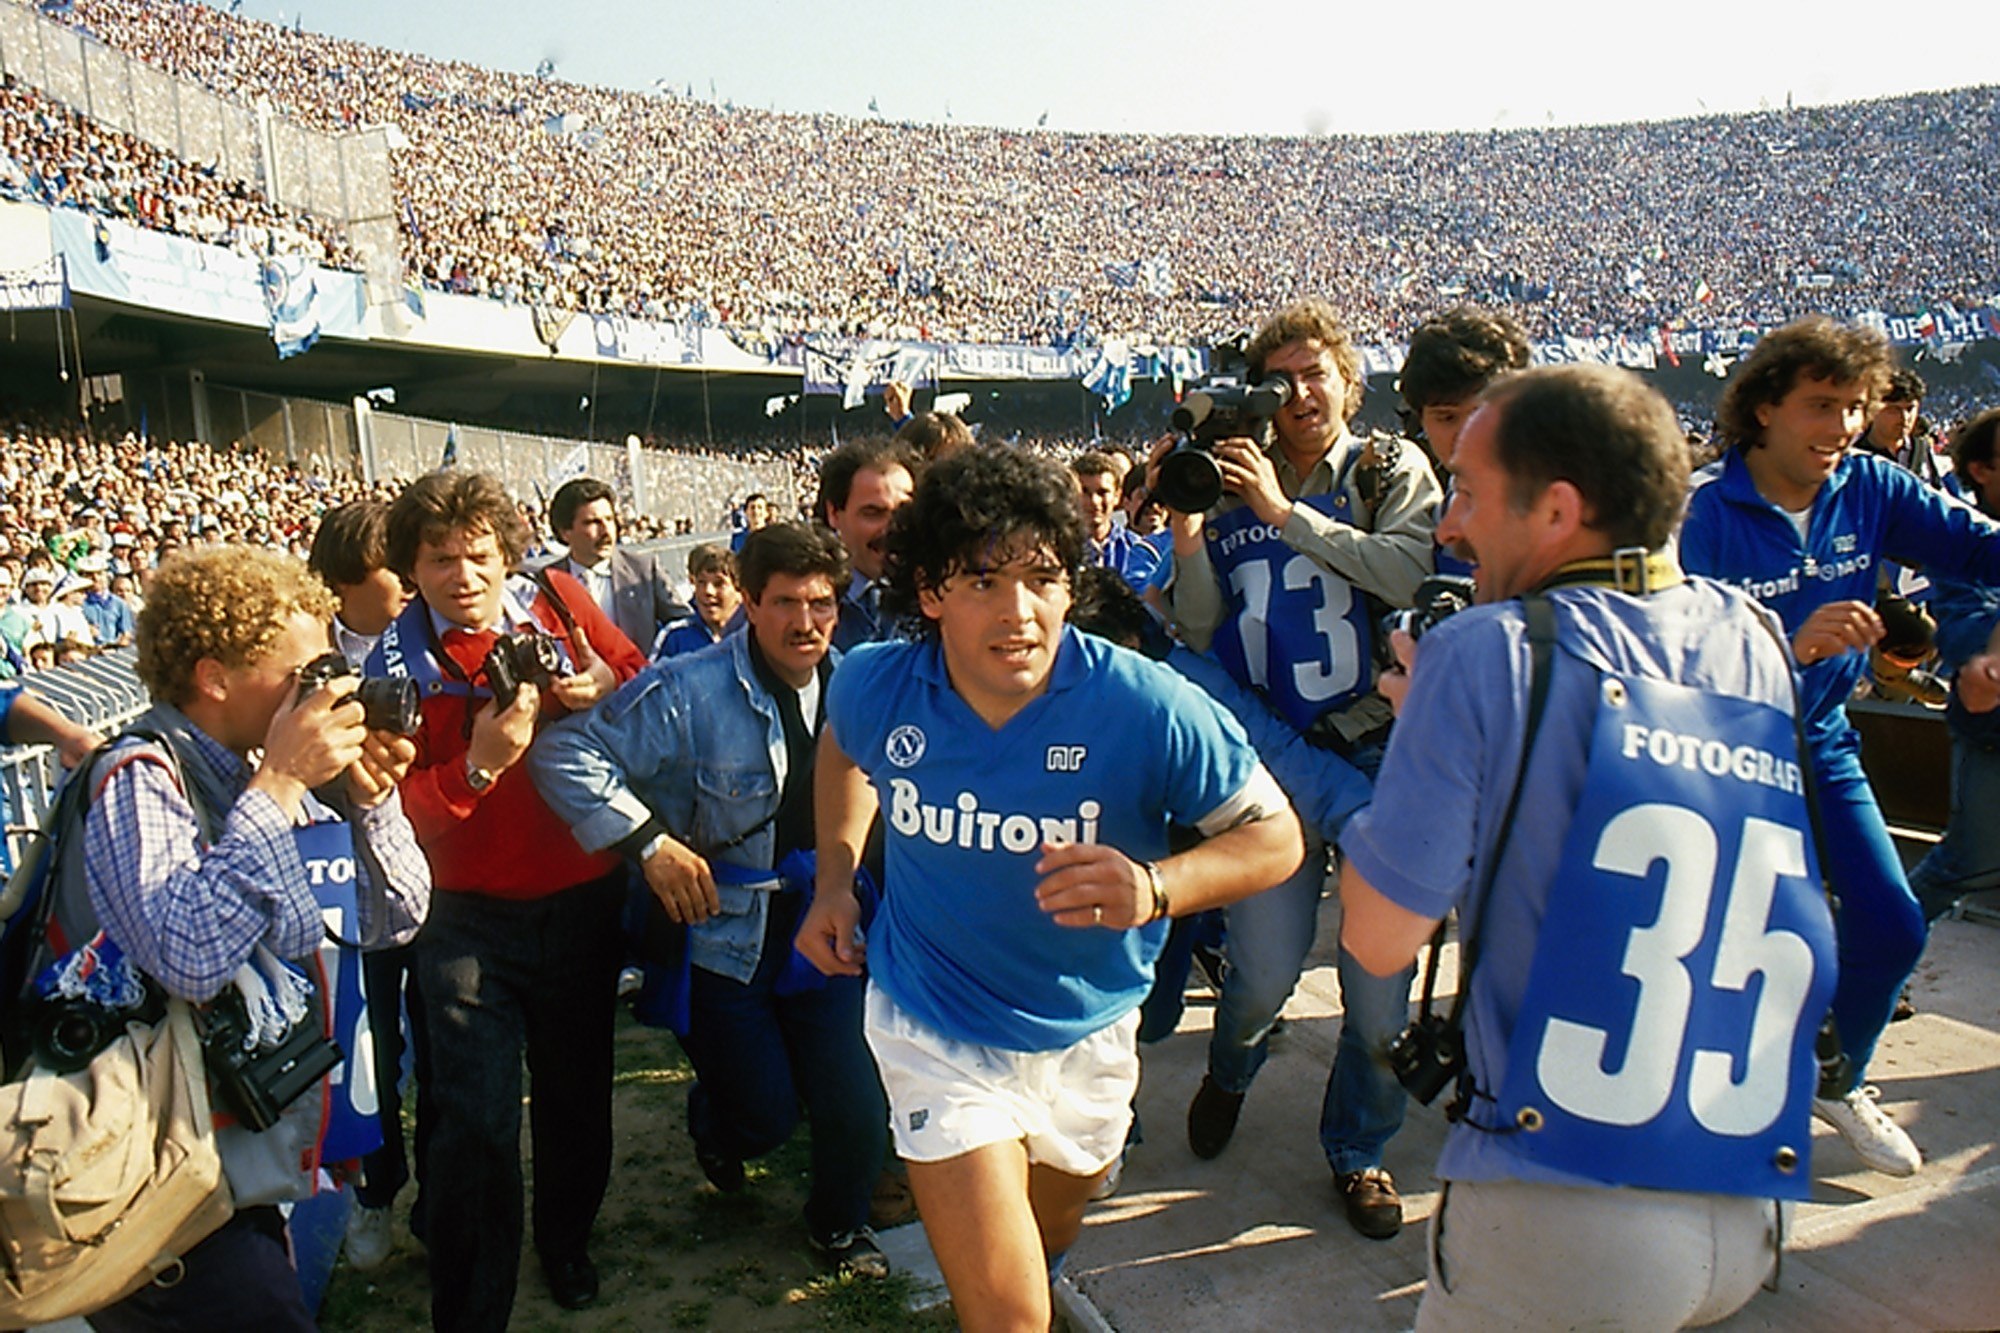 Imagen facilitada por el Festival de Cannes. La presencia de Maradona tenía que ser uno de los momentos especiales del Festival de Cannes pero una operación le ha impedido asistir al estreno del documental "Diego Maradona". (Foto Prensa Libre: EFE)